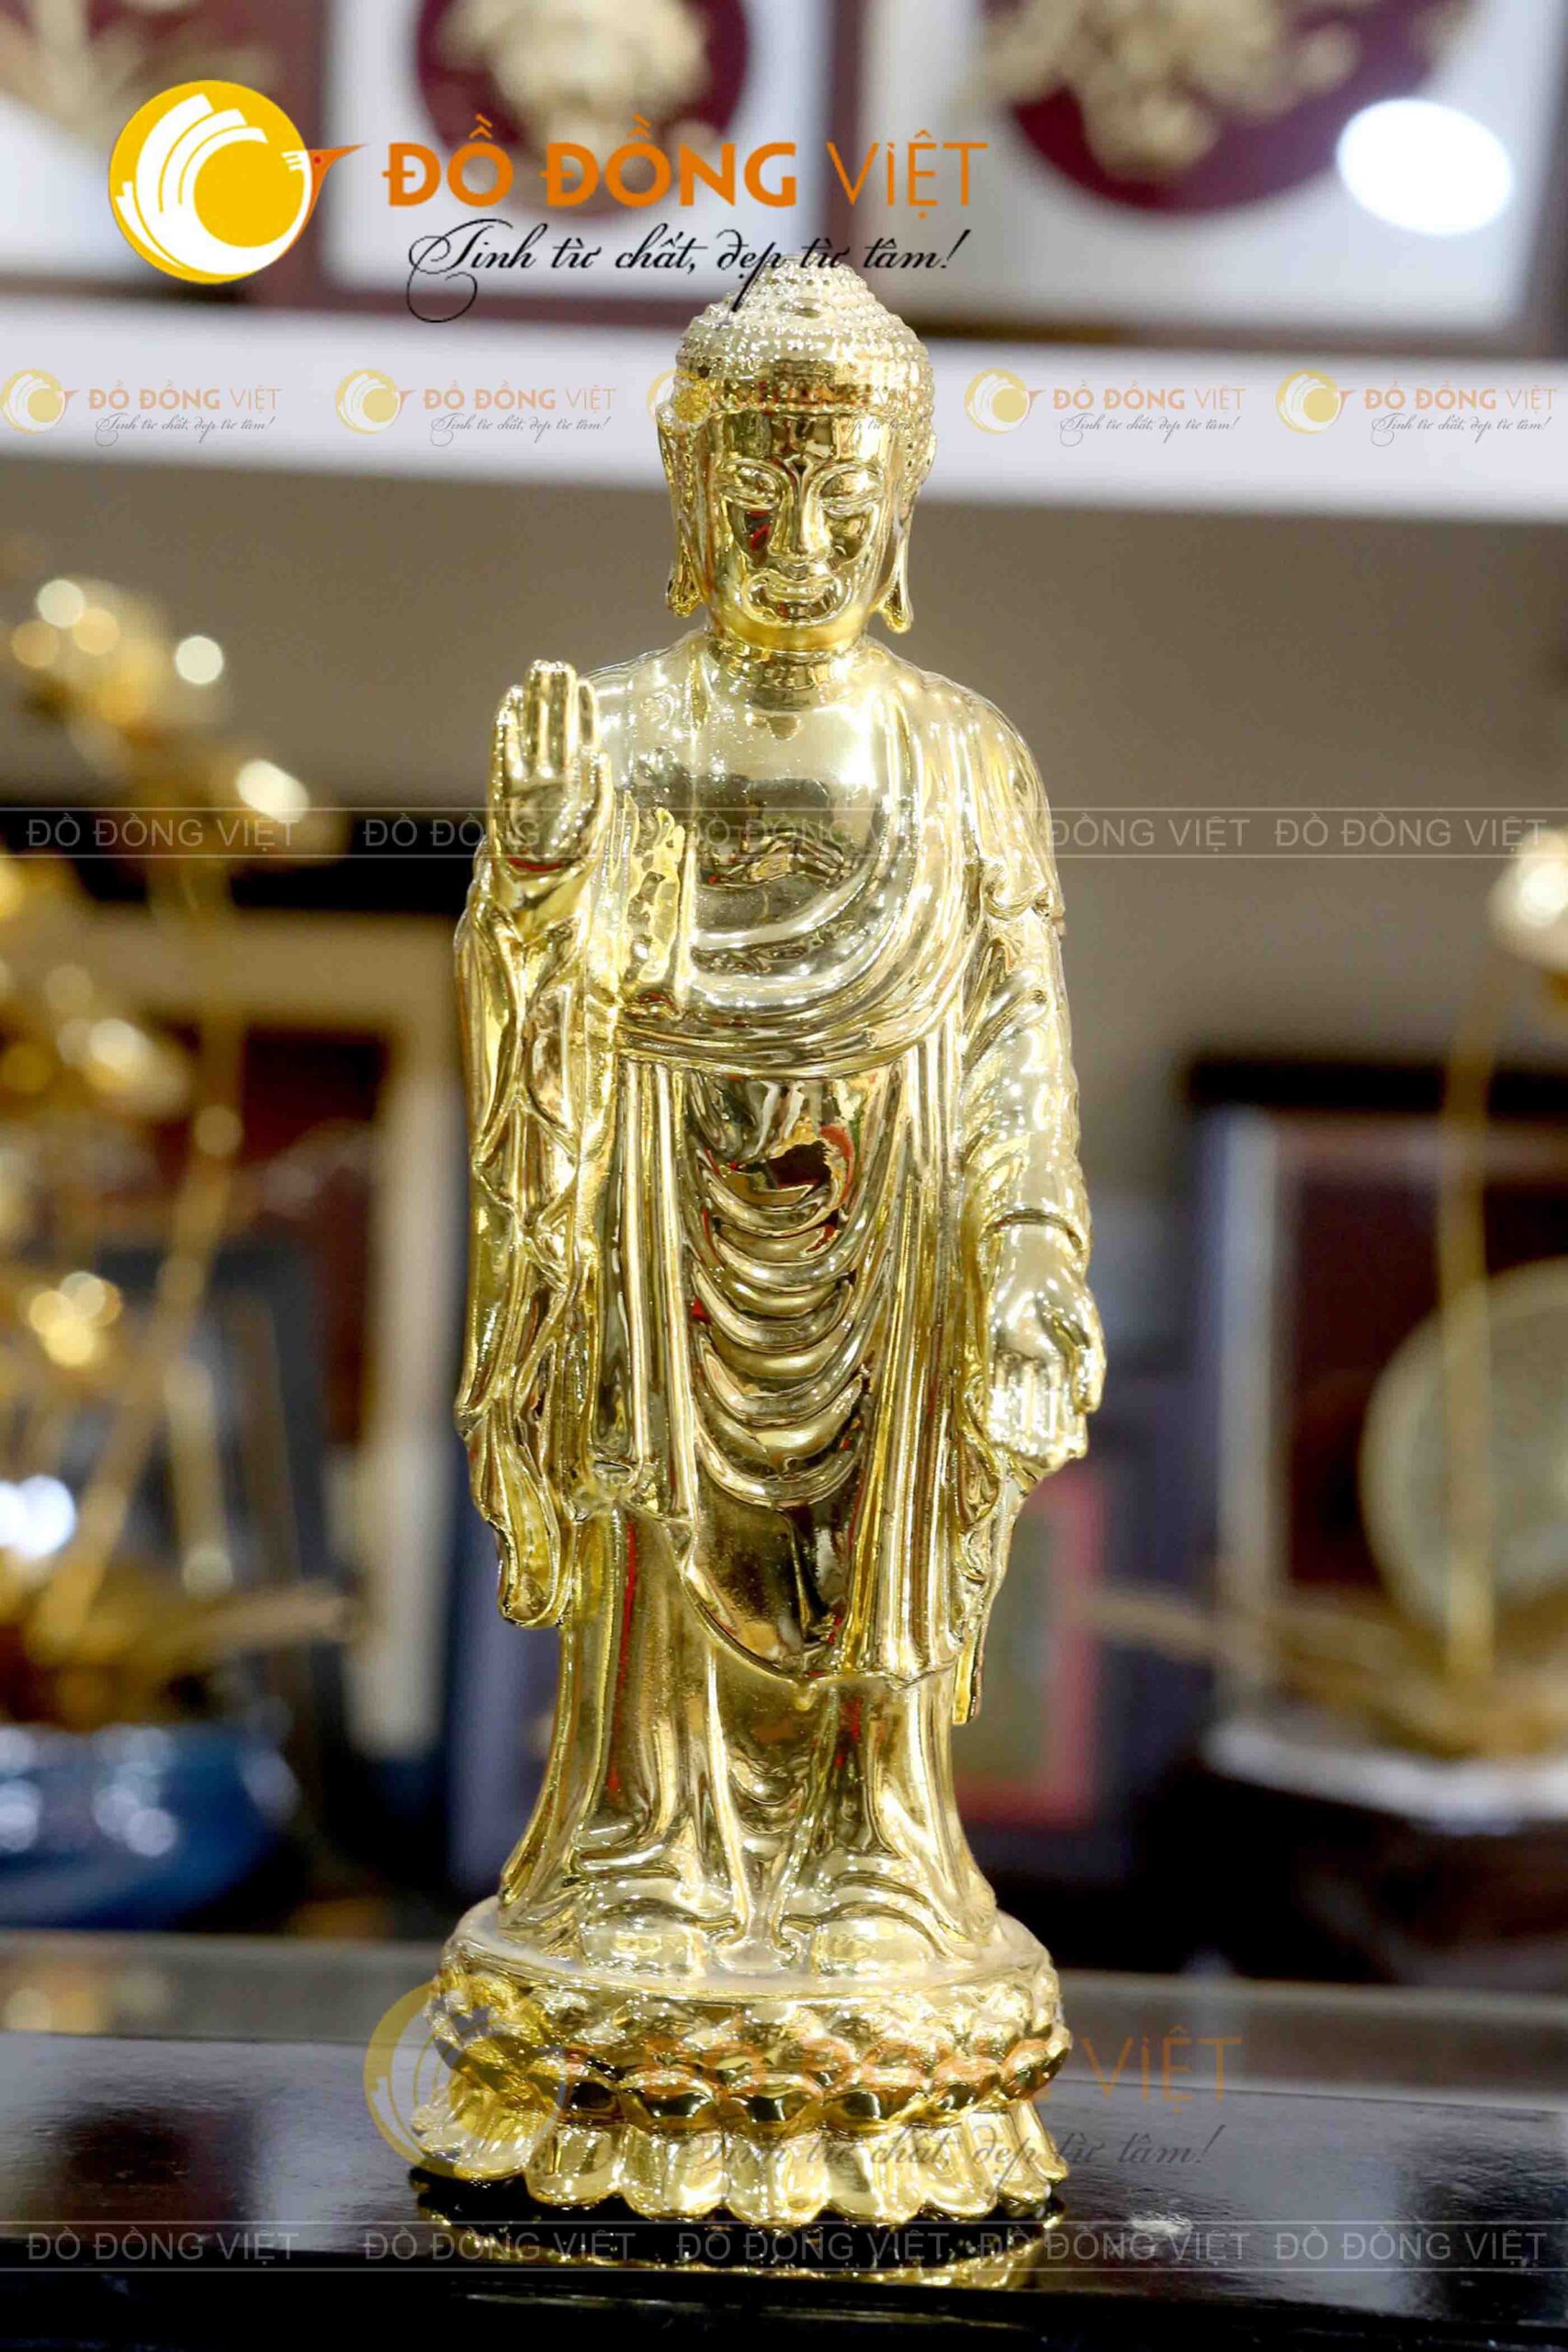 Đúc tượng Phật dát vàng cao cấp tại cơ sở Đồ đồng Việt Cần Thơ